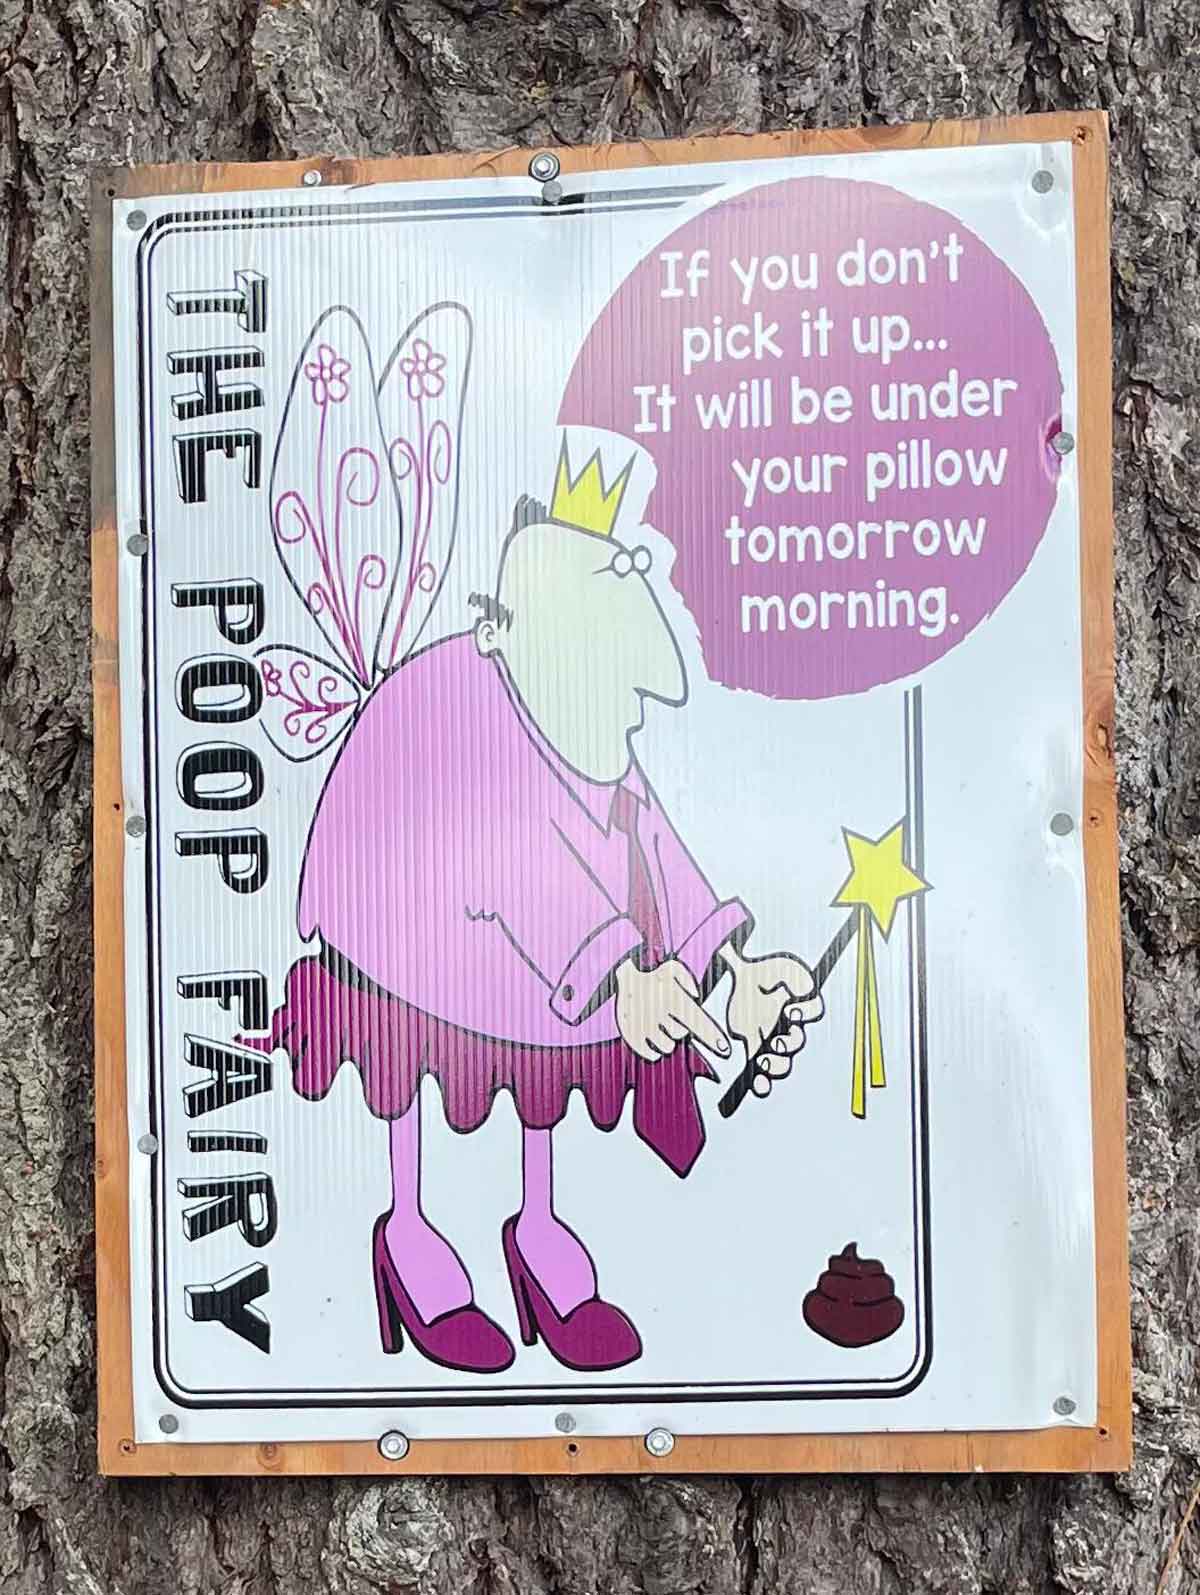 The Poop Fairy